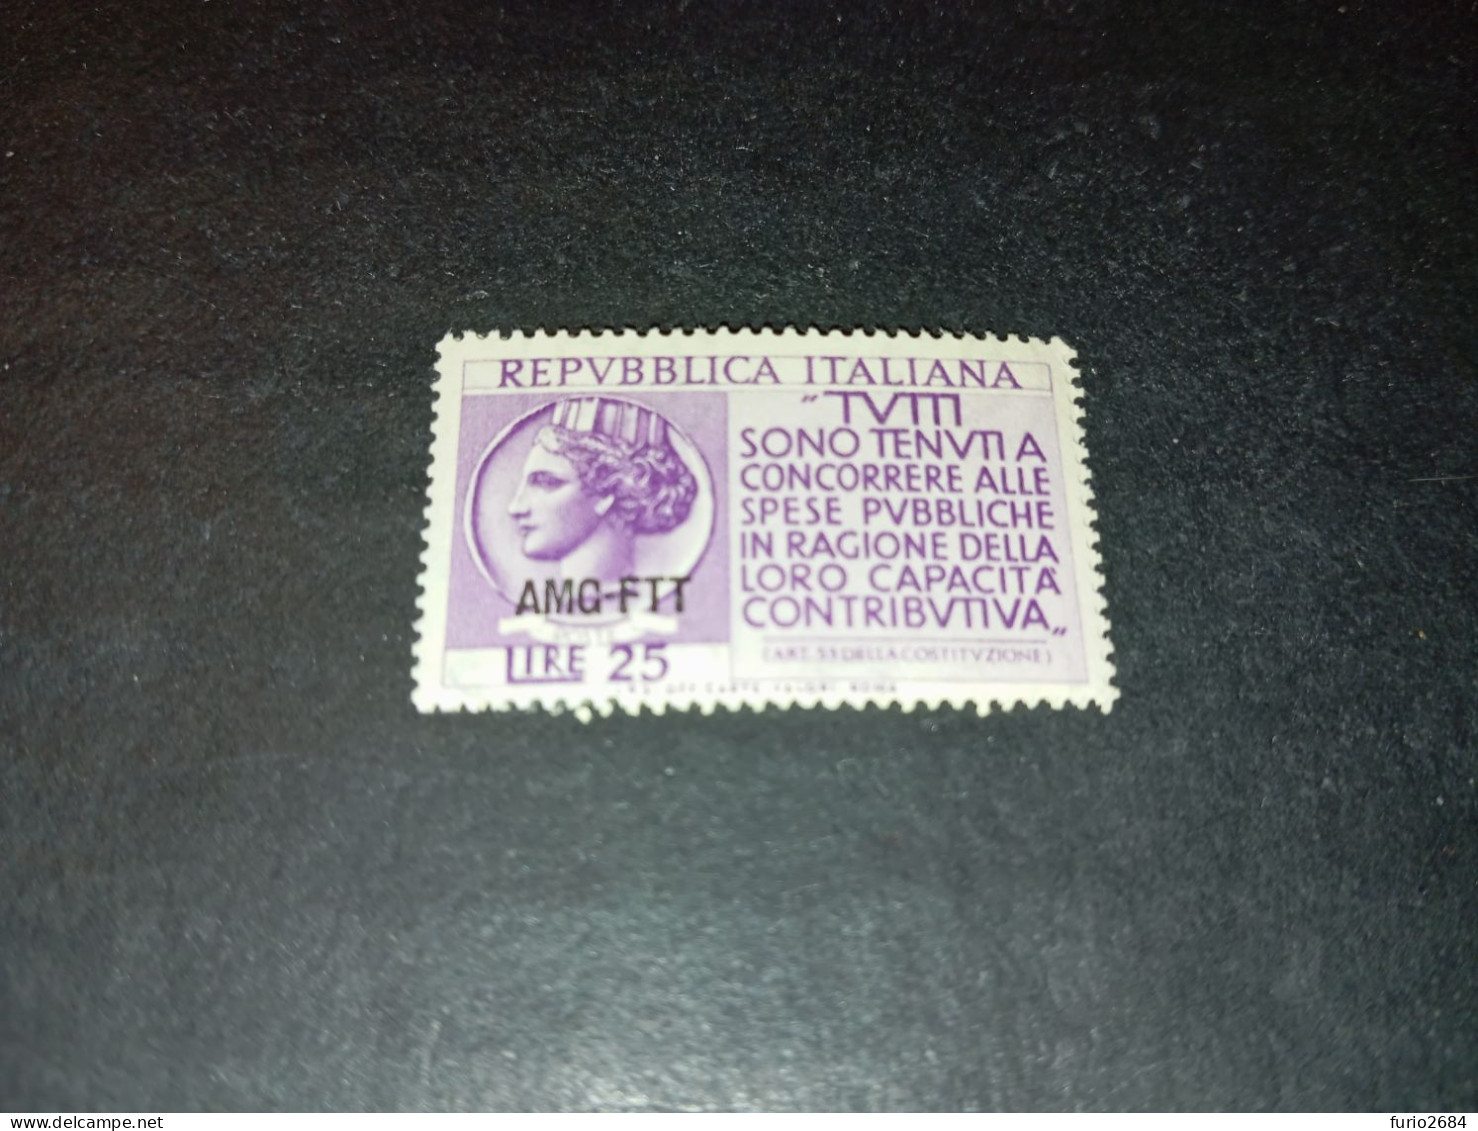 07AL06 TERRITORIO LIBERO TRIESTE ZONA A AMG-FTT 1954 PROPAGANDA PER A DENUNCIA DEL REDDITO "XX" - Ungebraucht